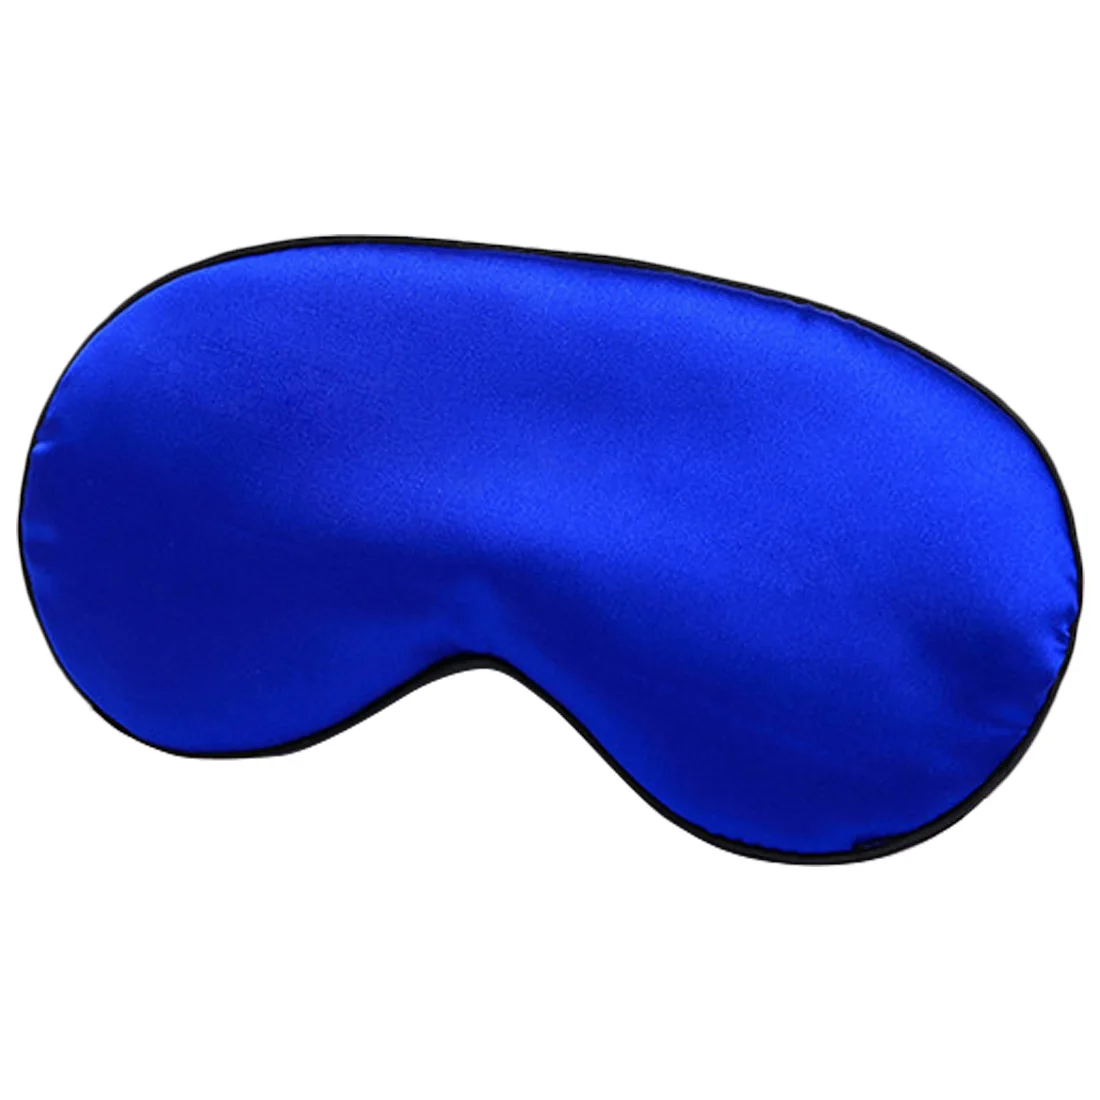 Горячее предложение чистый шелк/двусторонний затеняющий мягкий чехол для сна и красоты глаз/маска для отдыха во время сна/дорожная маска для отдыха с повязкой на глаза - Цвет: Royal blue